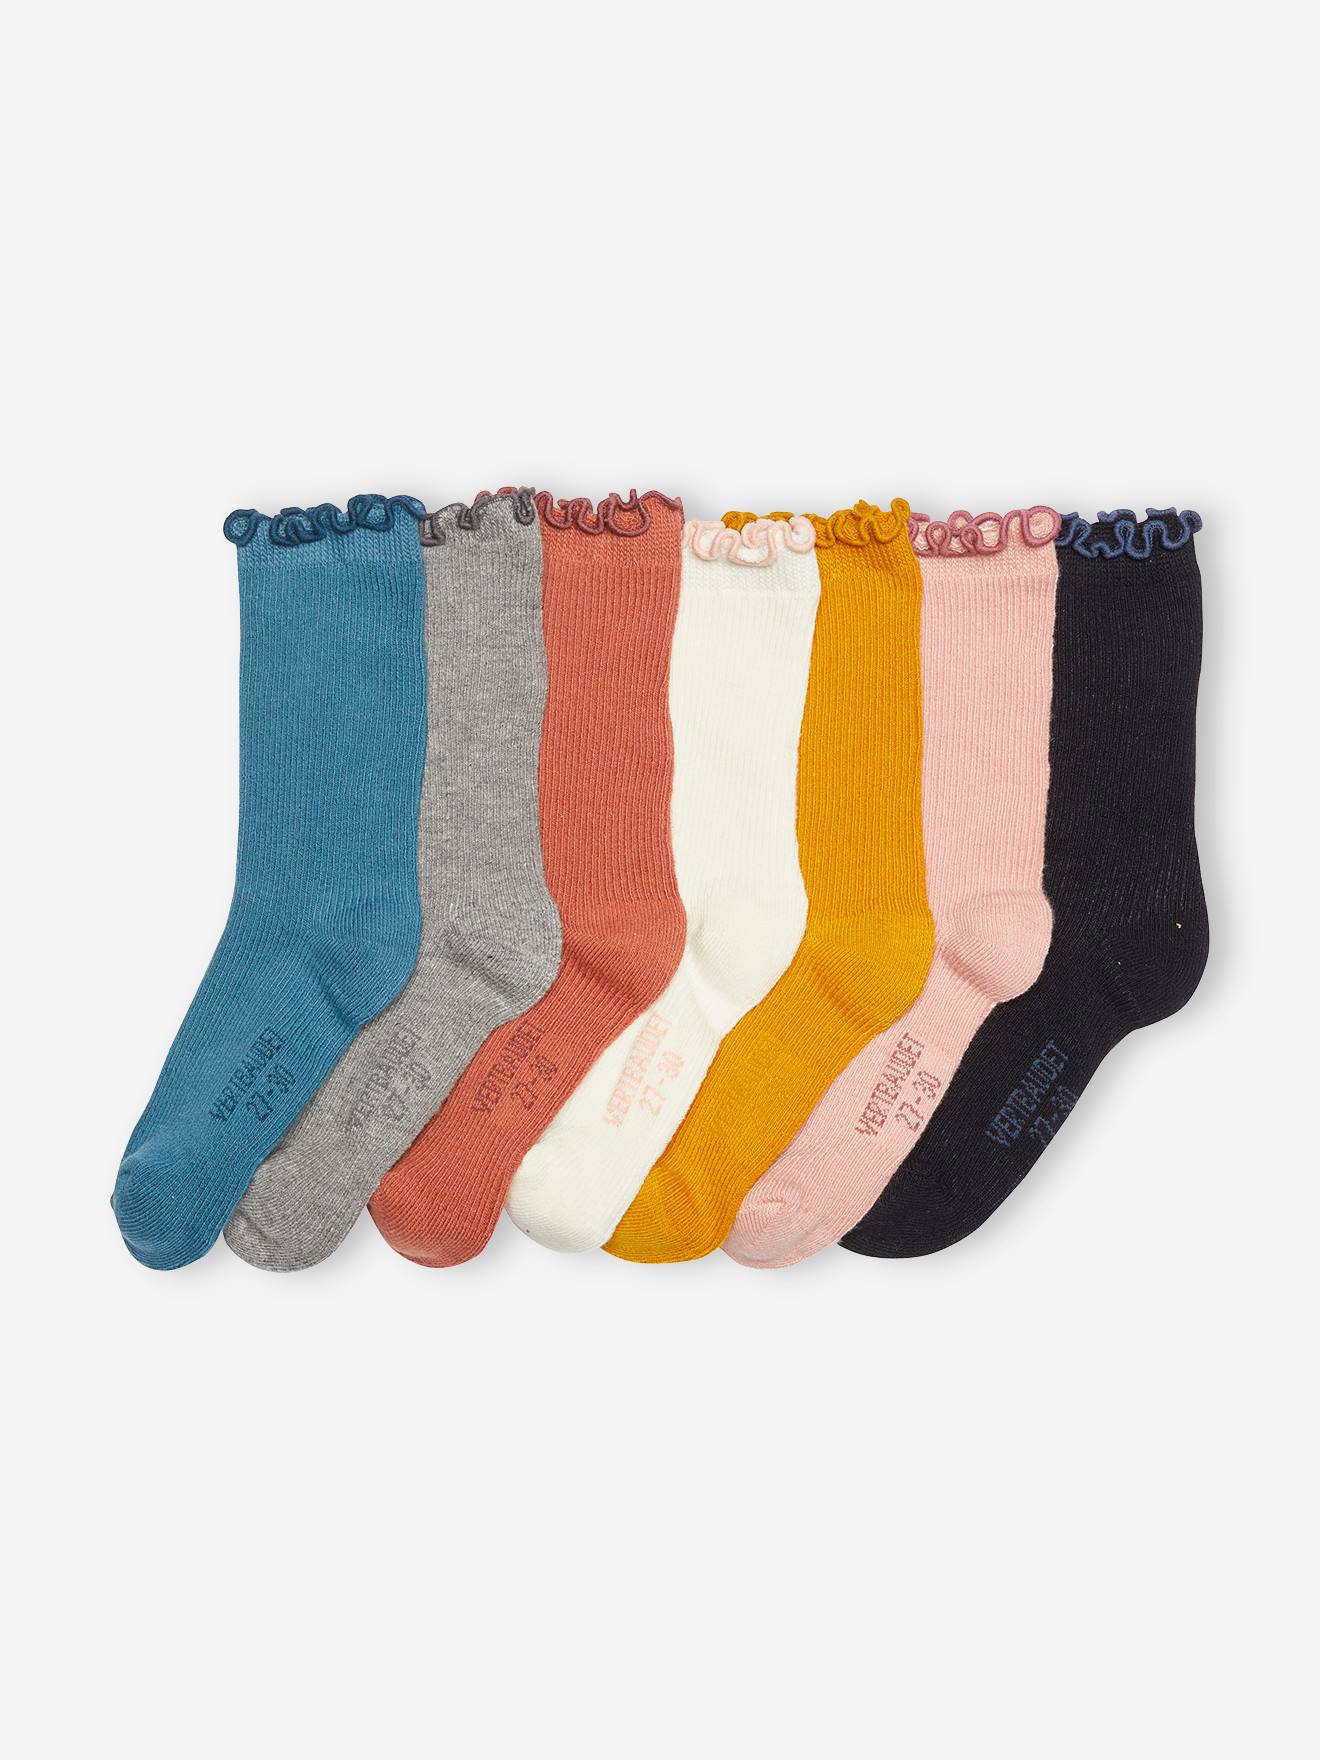 angeraut Kinder Mädchen Unterwäsche & Socken Socken Gr 19-22 4x Socken 